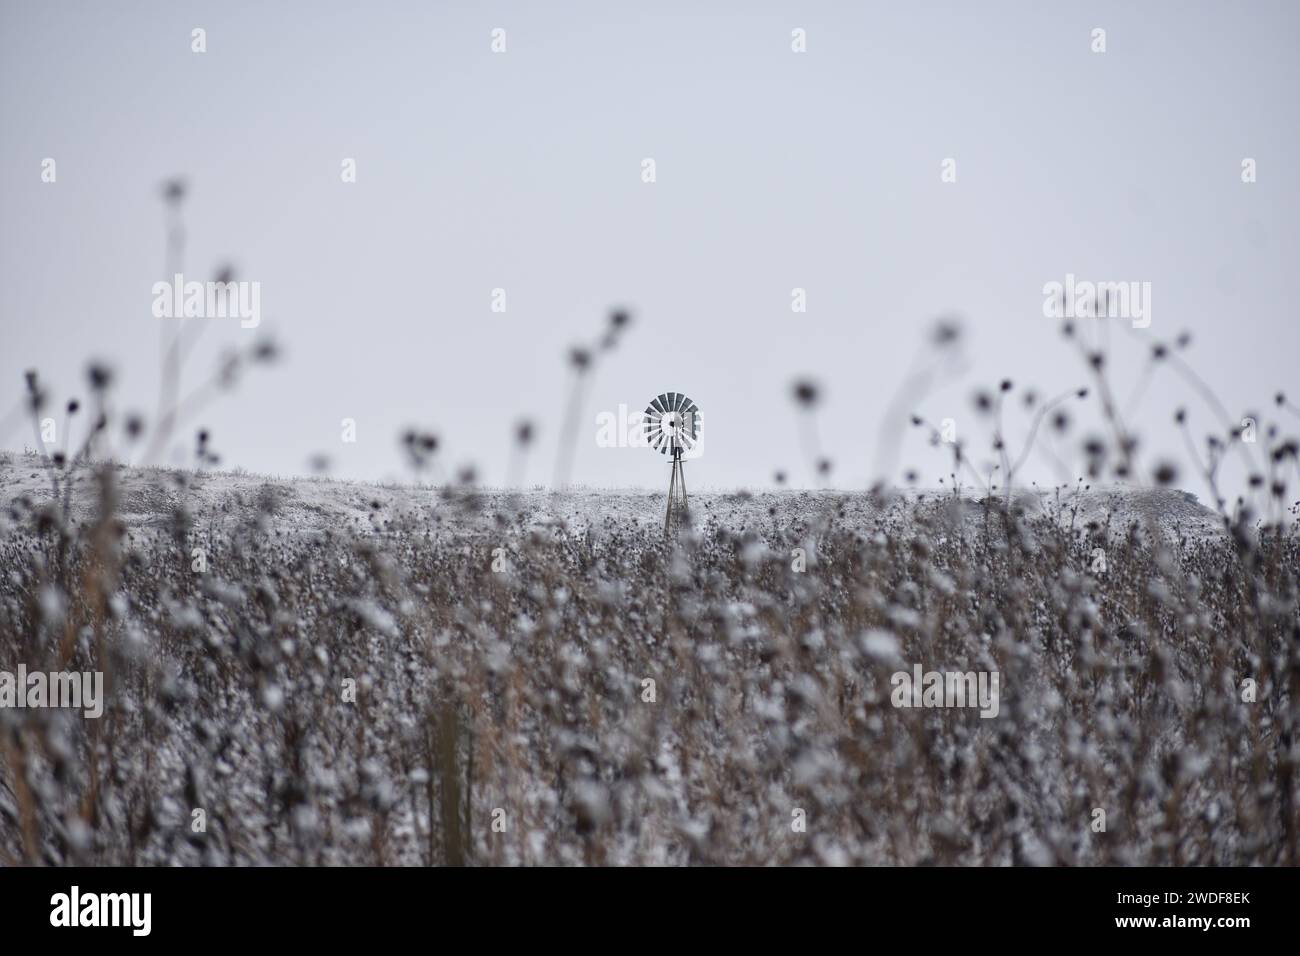 Un mulino a vento d'epoca è raffigurato da solo in un desolato paesaggio invernale Foto Stock